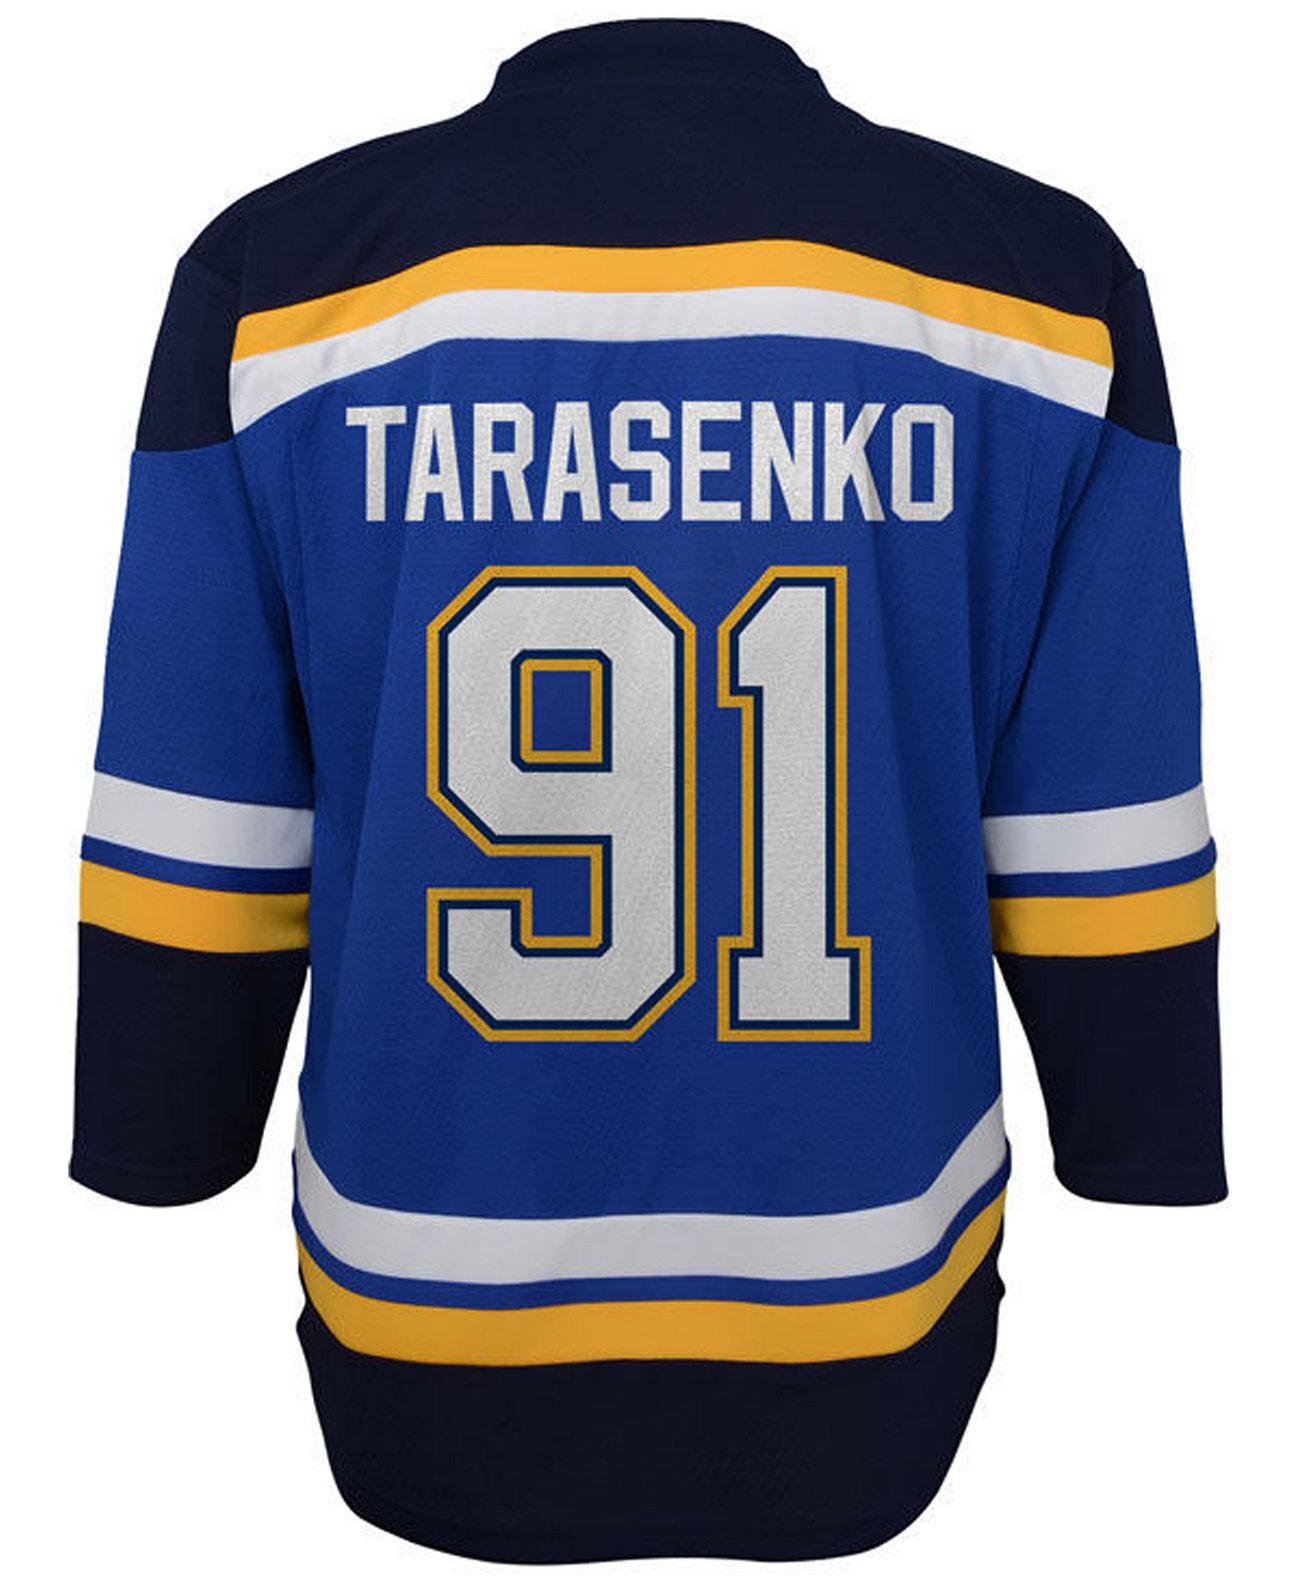 Реплика игрока блюза Владимира Тарасенко из Сент-Луиса, Little Boys (4-7) Authentic NHL Apparel